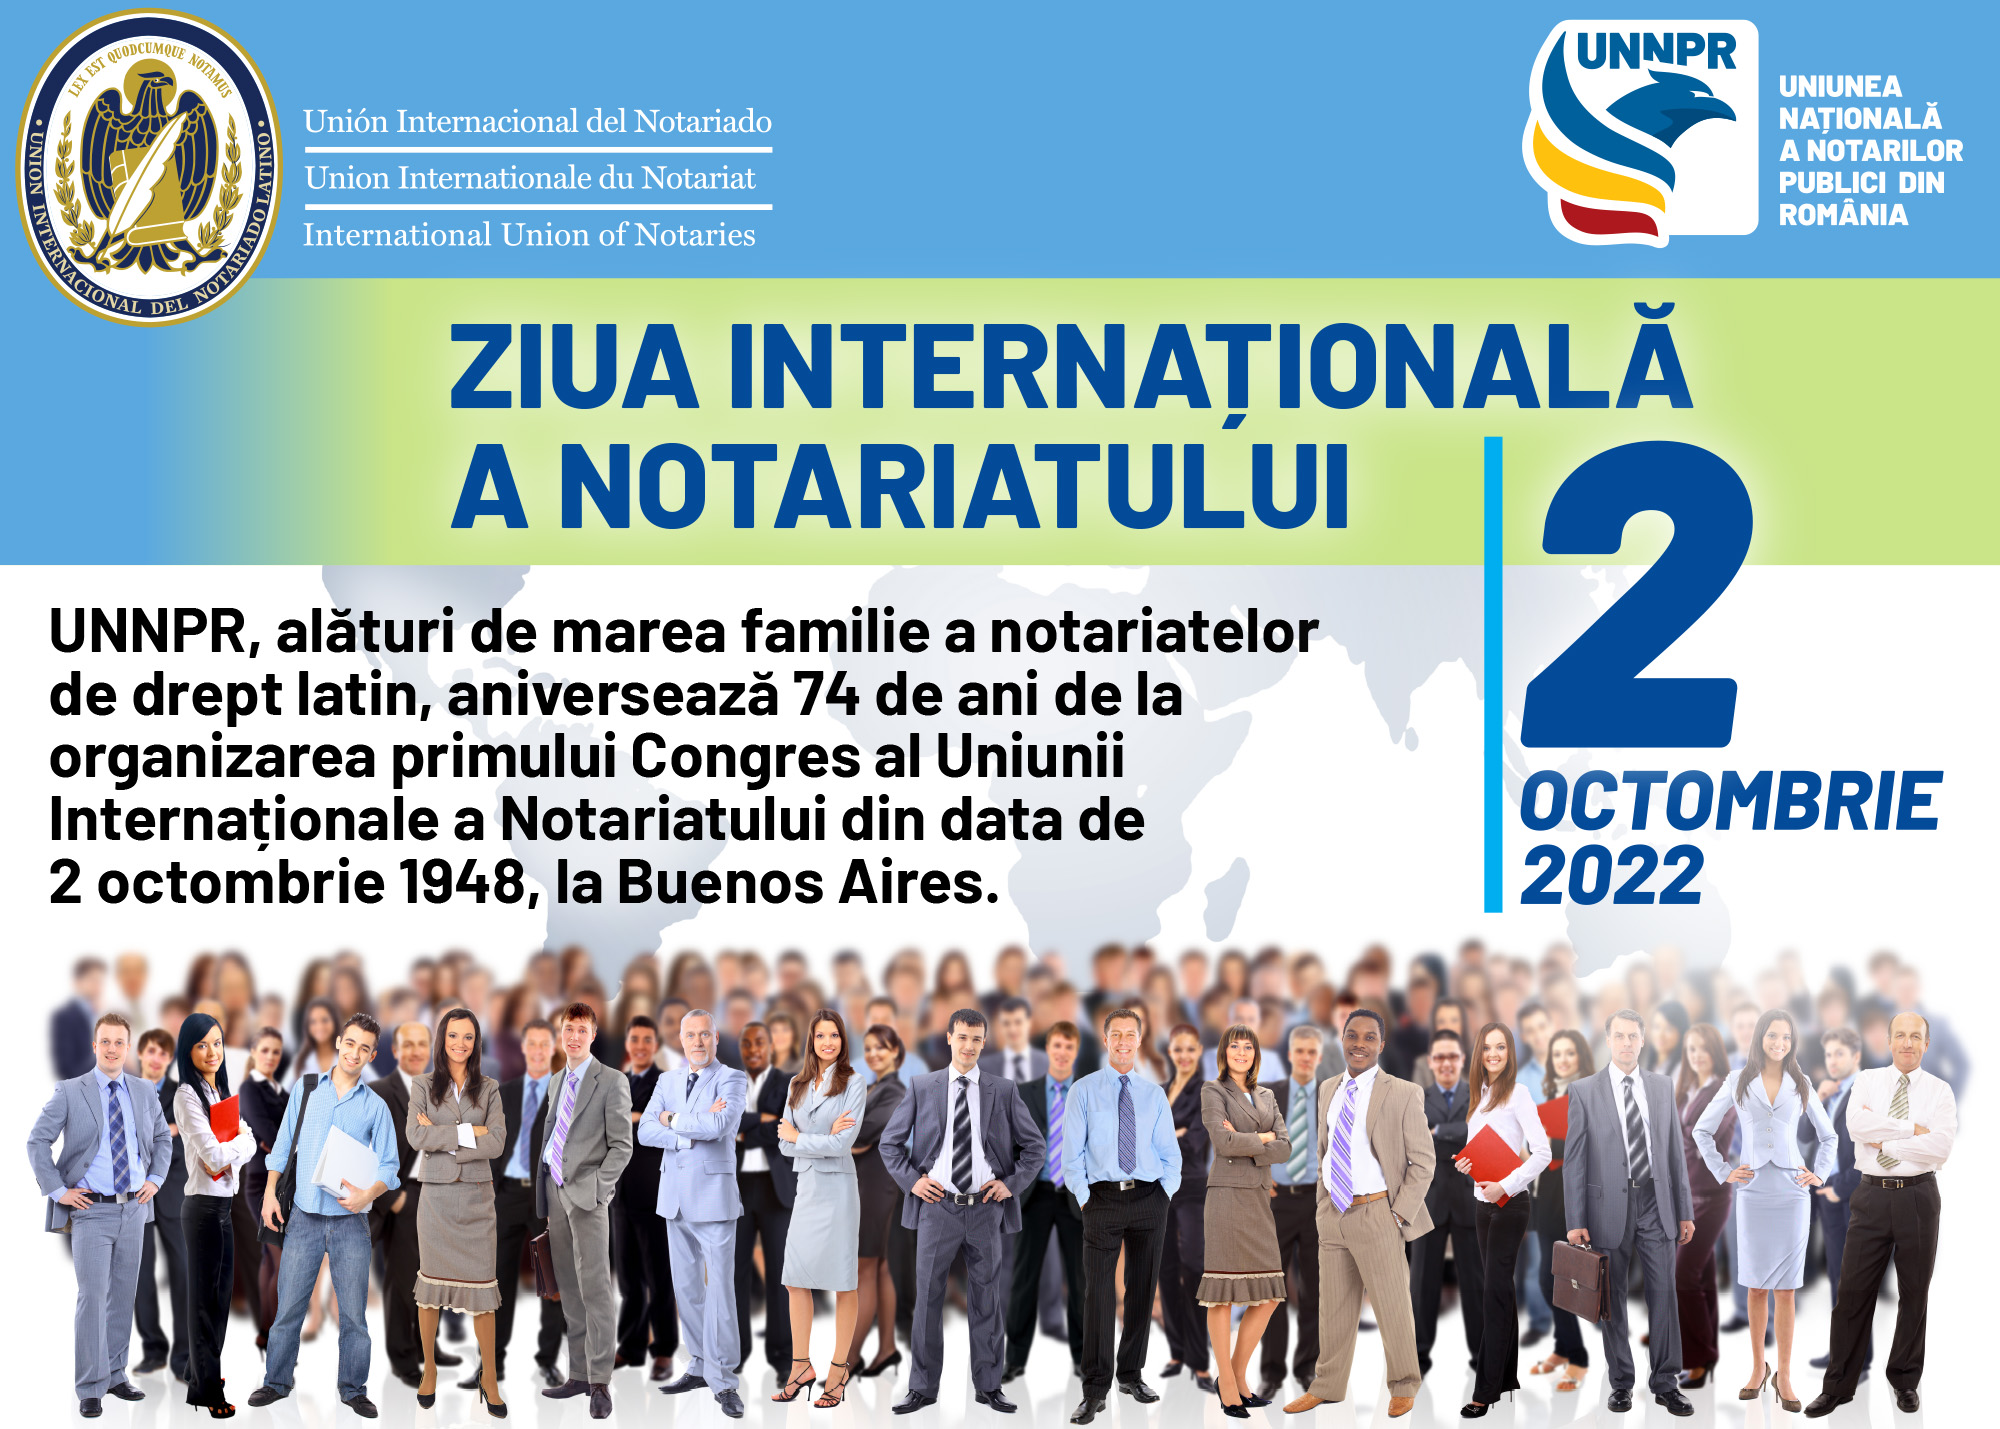 ZIUA INTERNATIONALA A NOTARIATULUI – UNNPR aniverseaza 74 de ani de la organizarea primului Congres al Uniunii Internationale a Notariatului. Presedintele UNNPR, Viorel Manescu: 